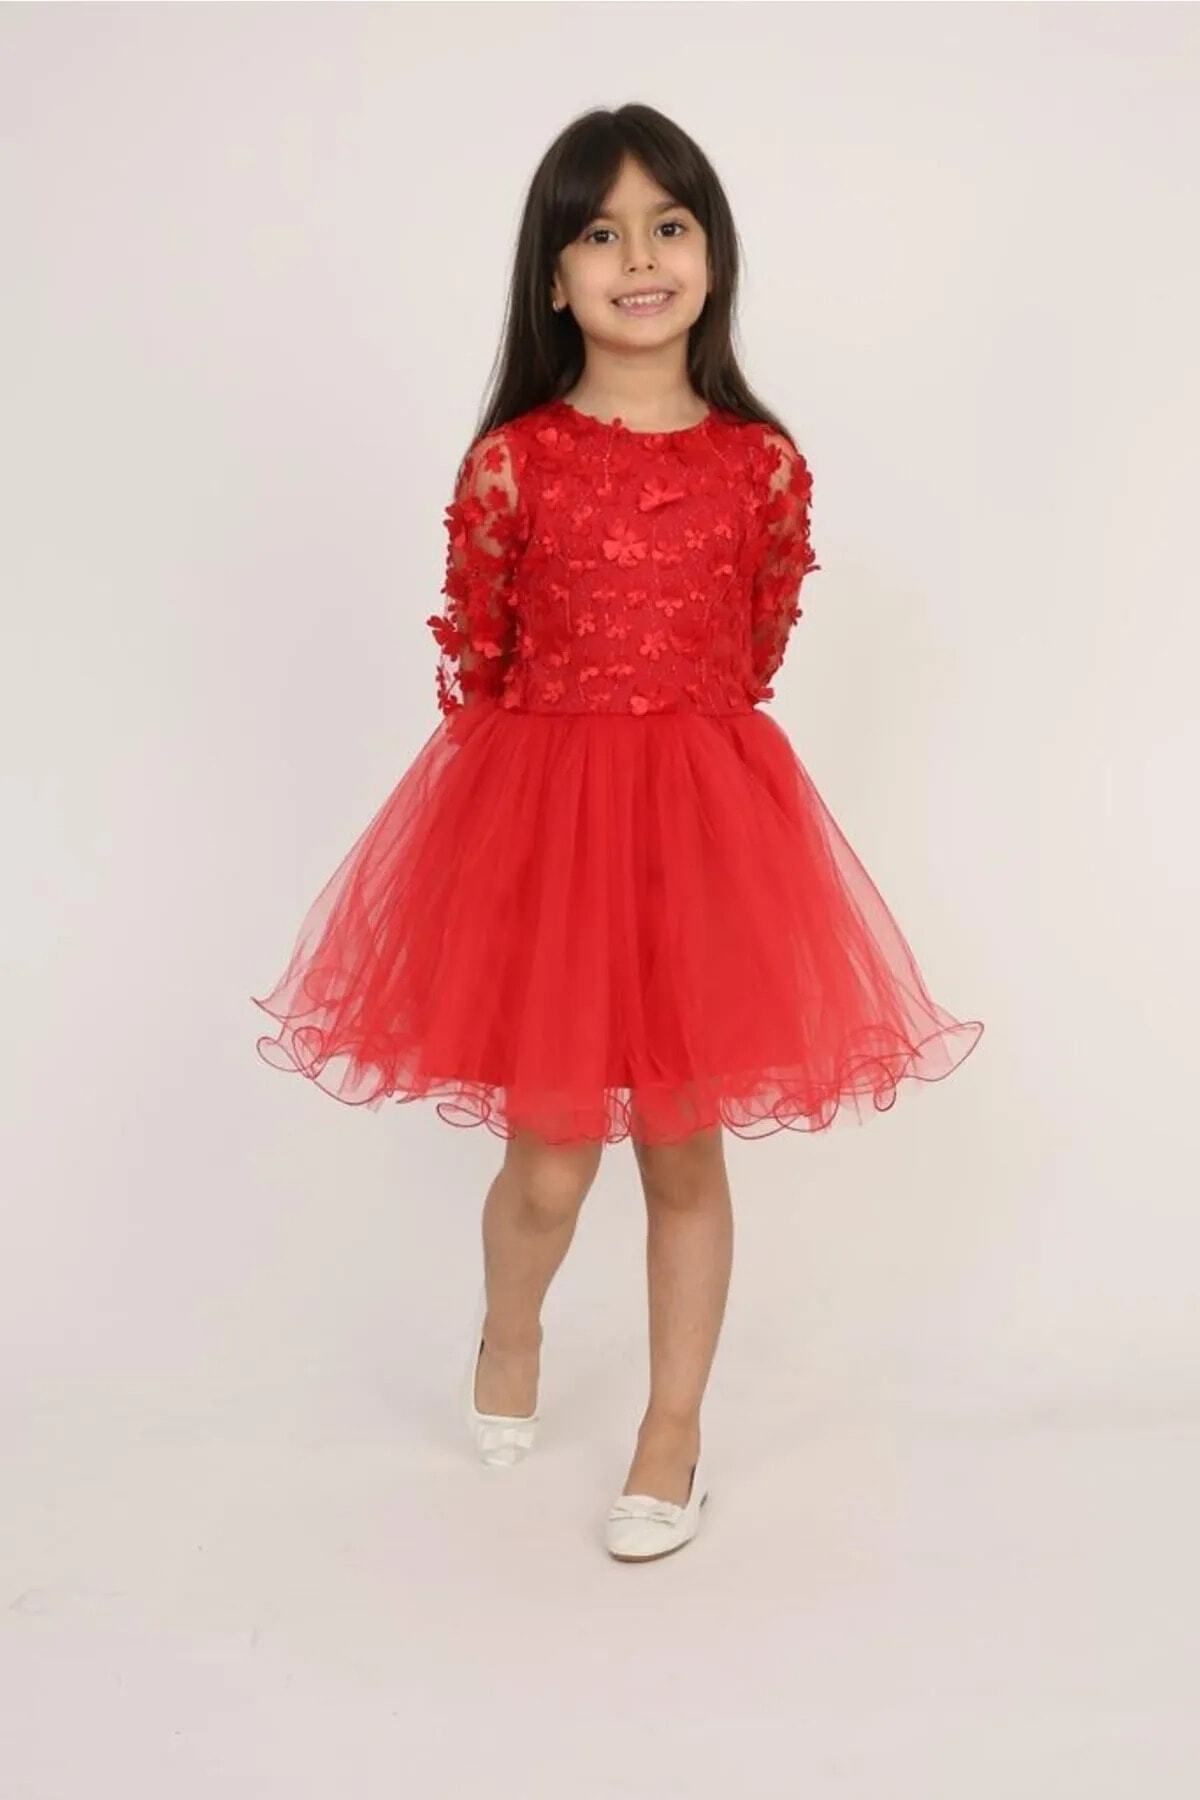 Nacar 23 Nisan Kız Çocuk Gösteri Kıyafeti Elbise Takım 0-24